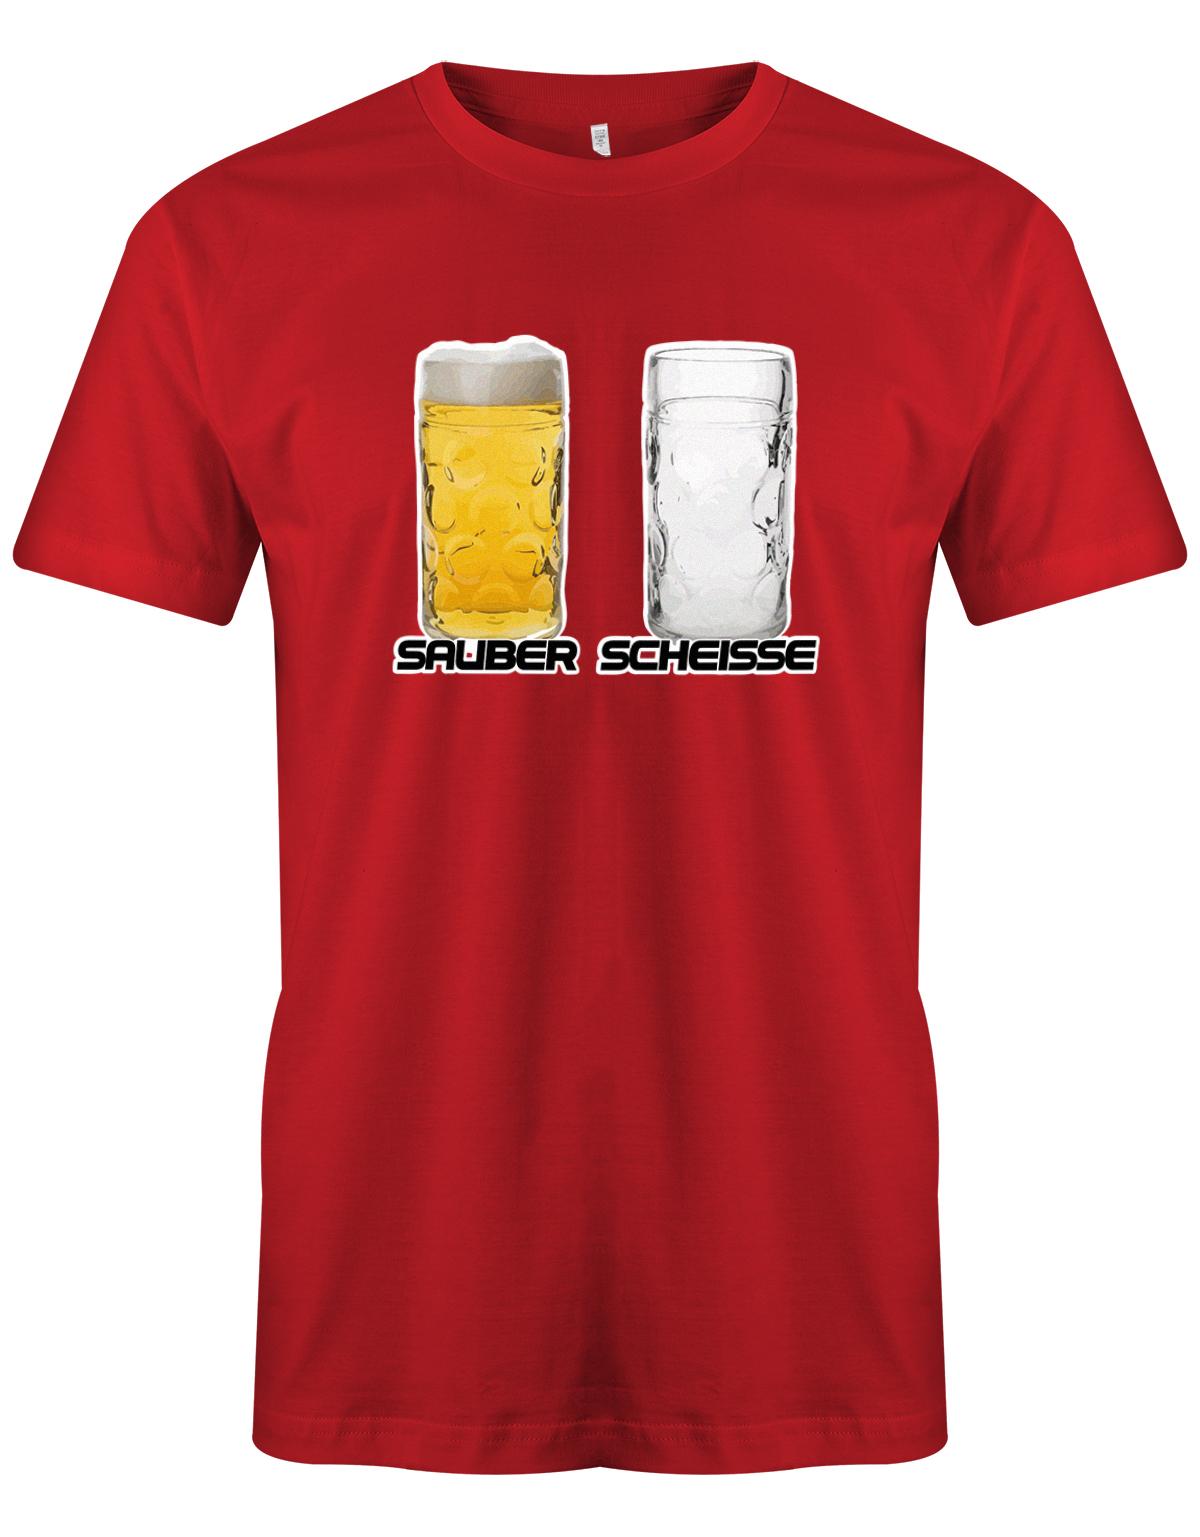 Bierglas-voll-Bierglas-leer-Herren-Shirt-Rot